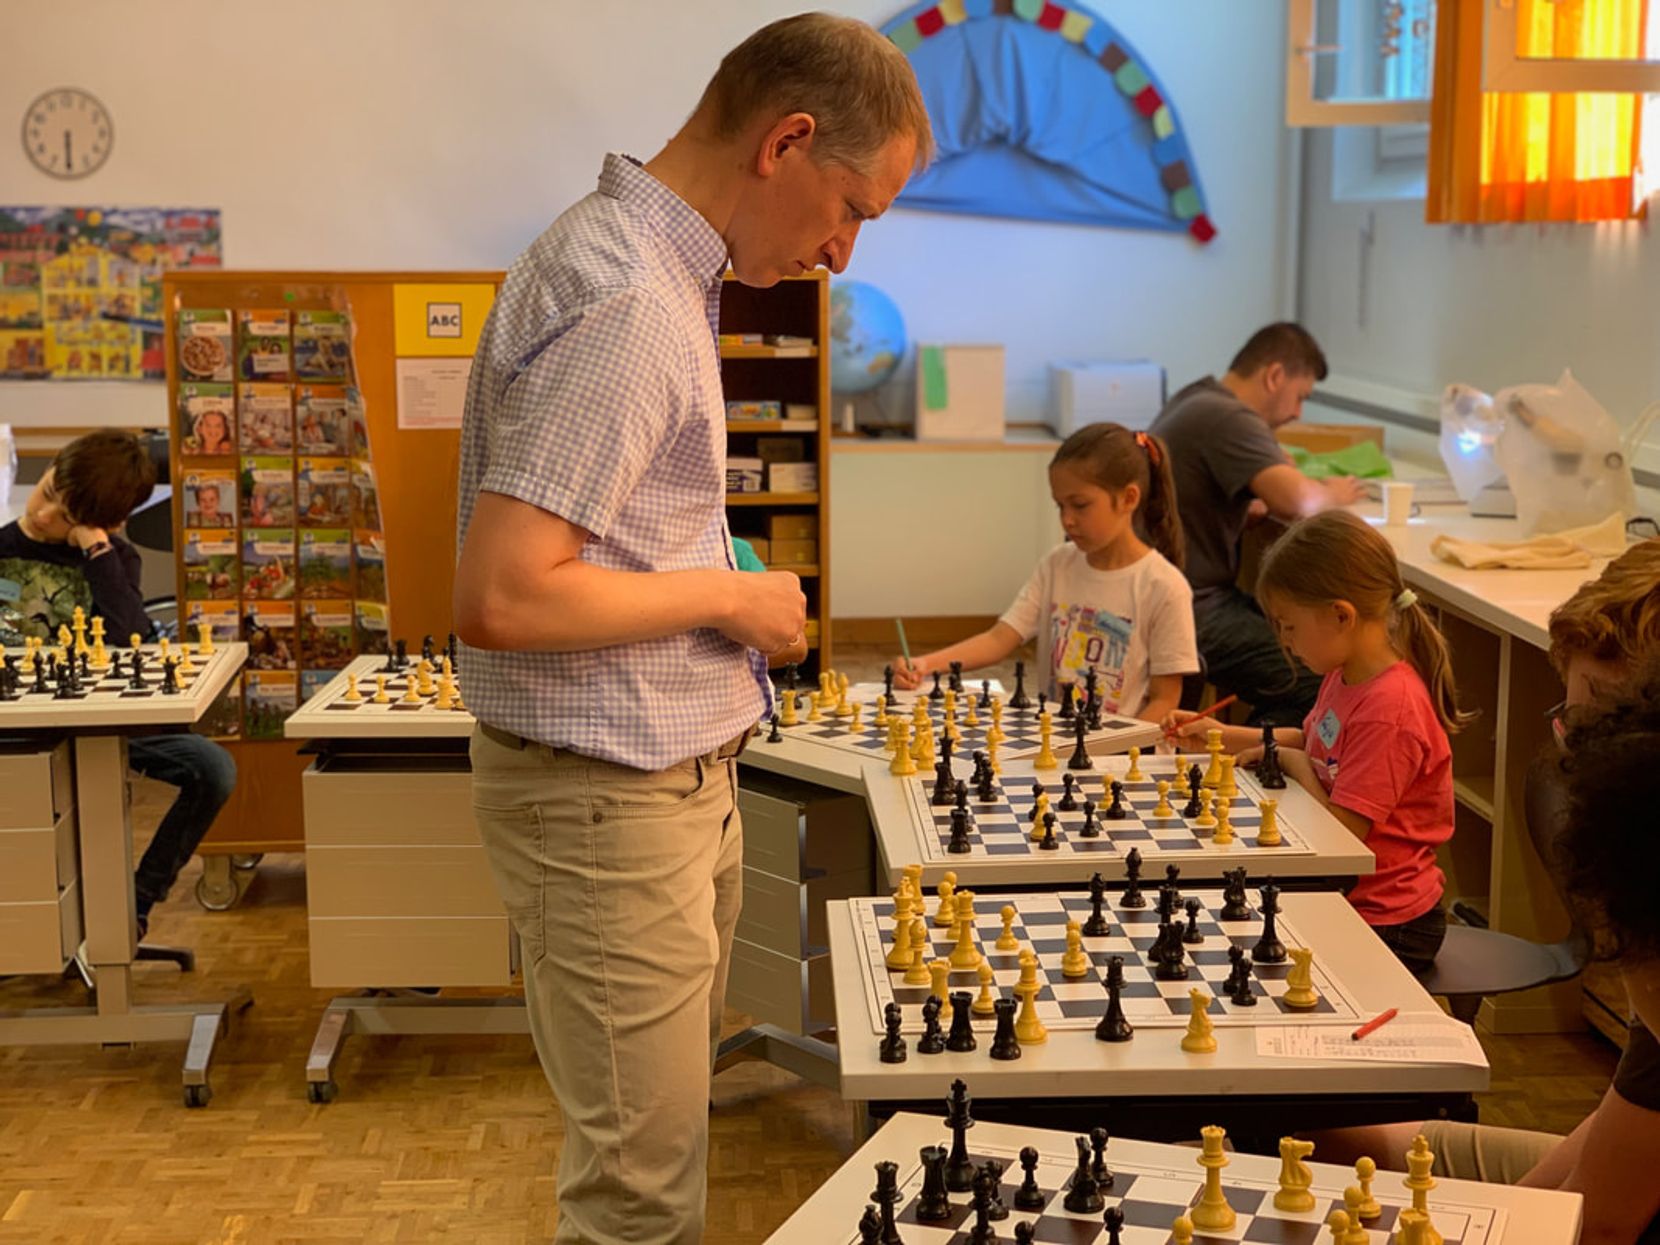 Auf dem Bild ist ein älterer Mann zu sehen, der vor an Schachbrettern sitzenden Kindern steht.